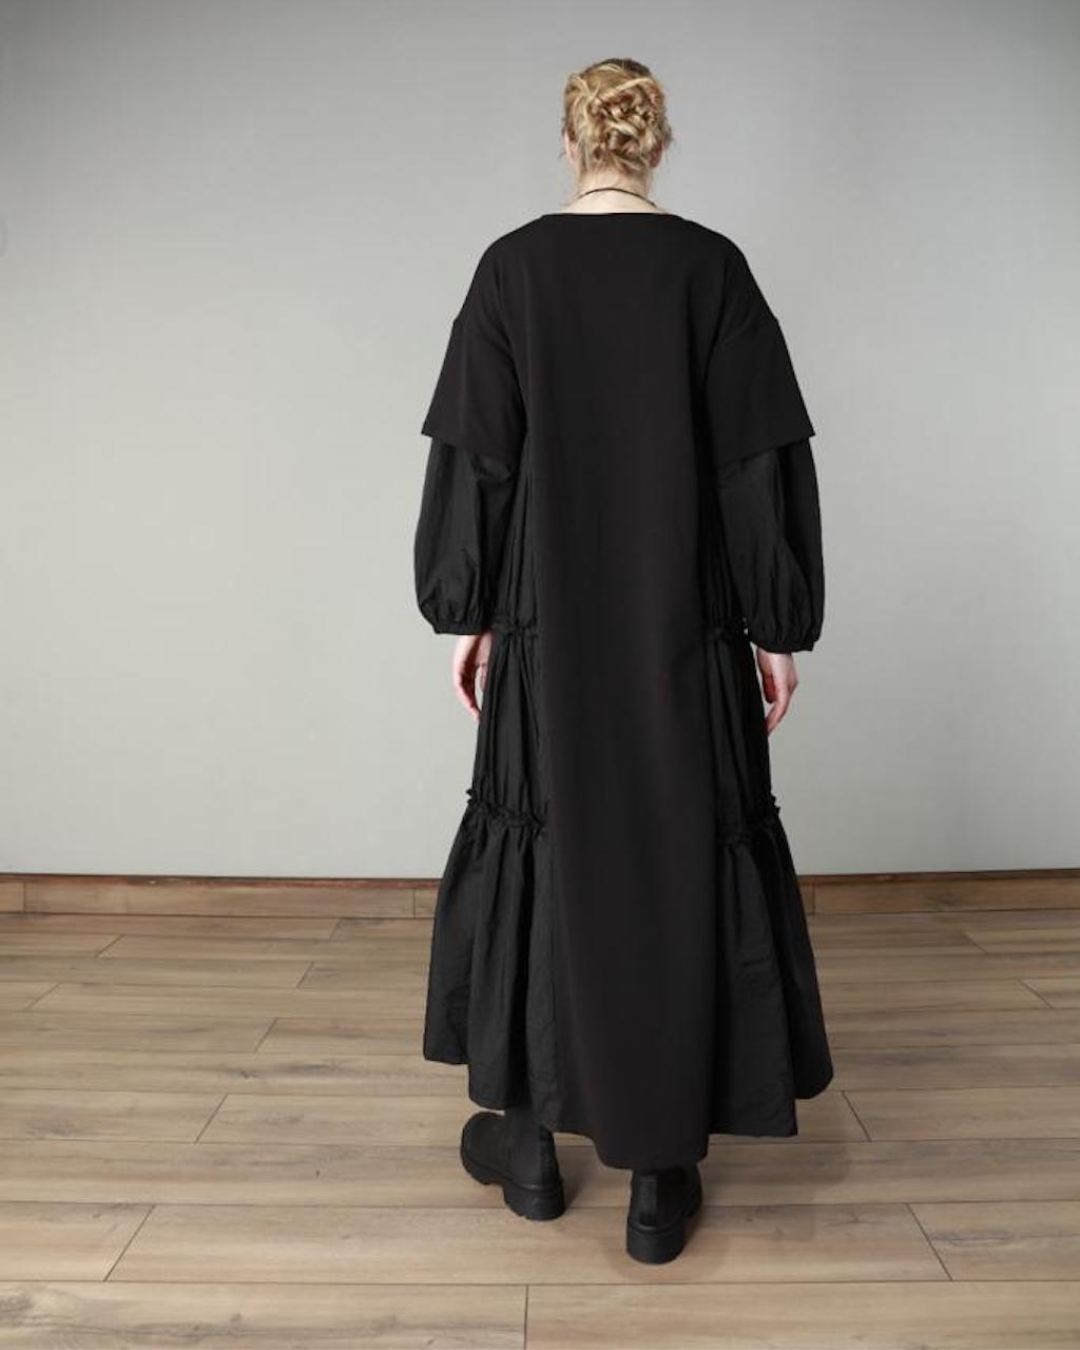 Fashion Forward Dress Design 22498 - Black